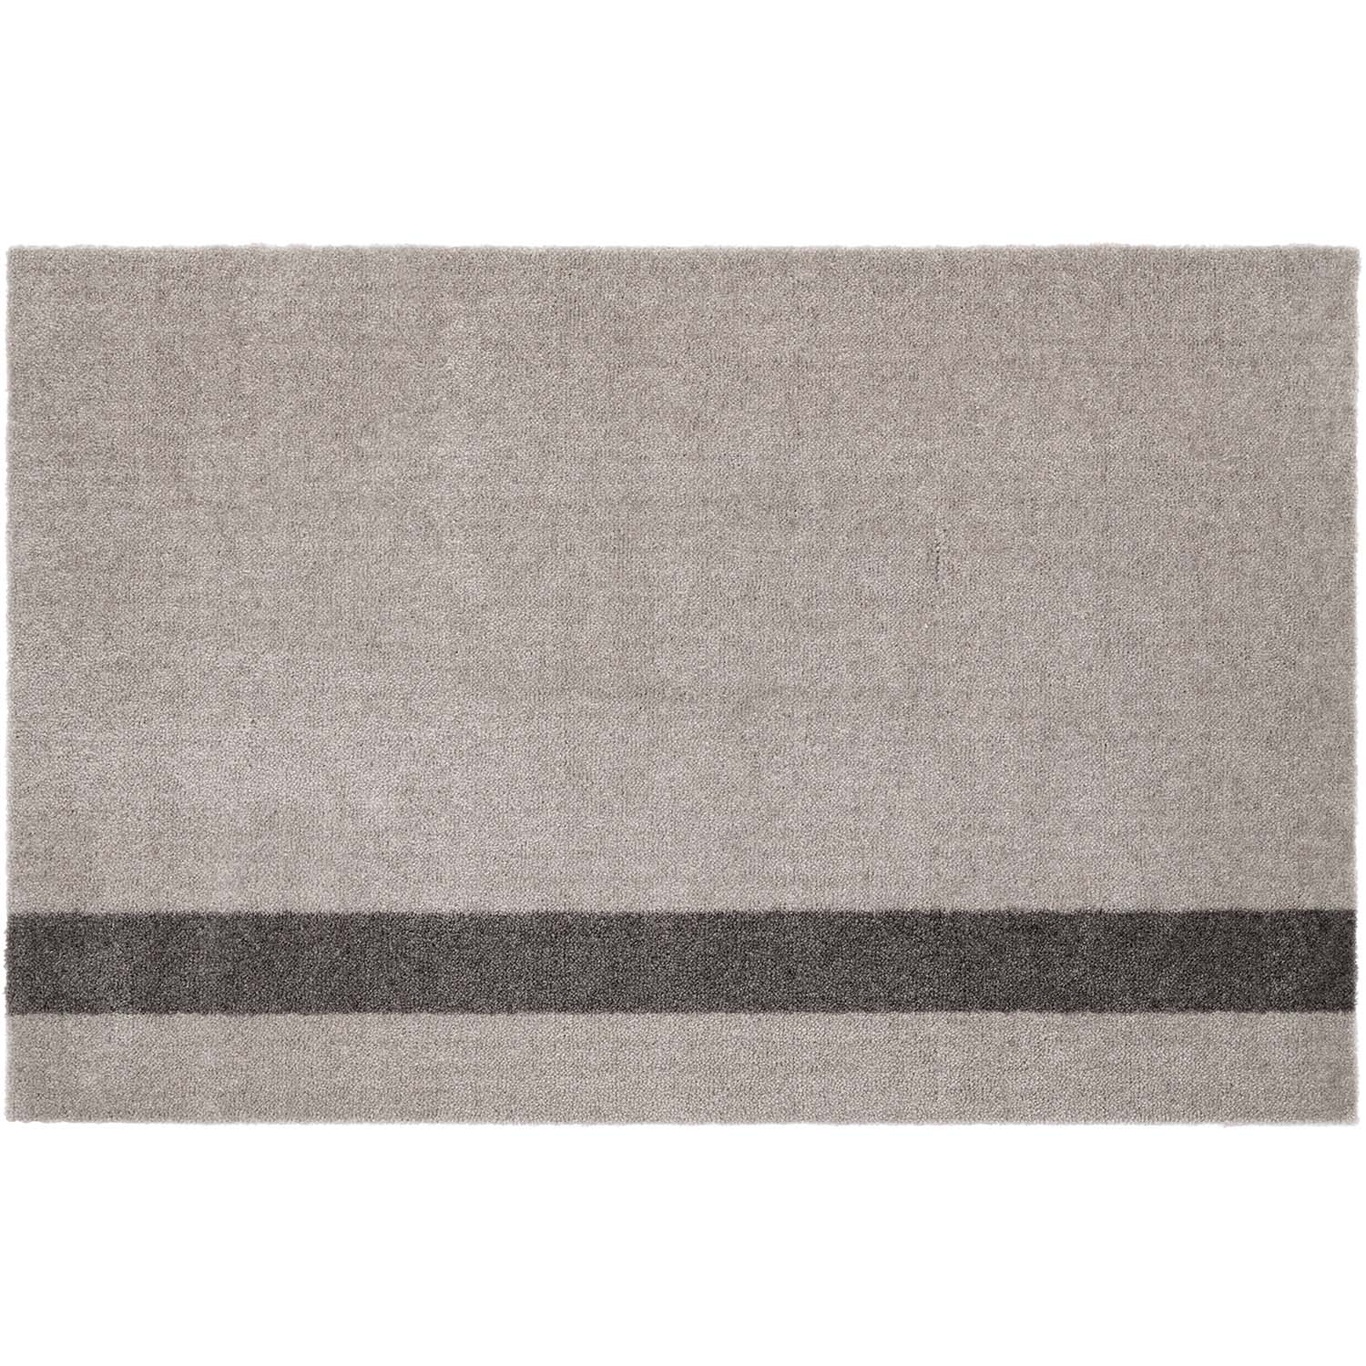 Stripes Teppich Hellgrau / Steel Grey, 60x90 cm